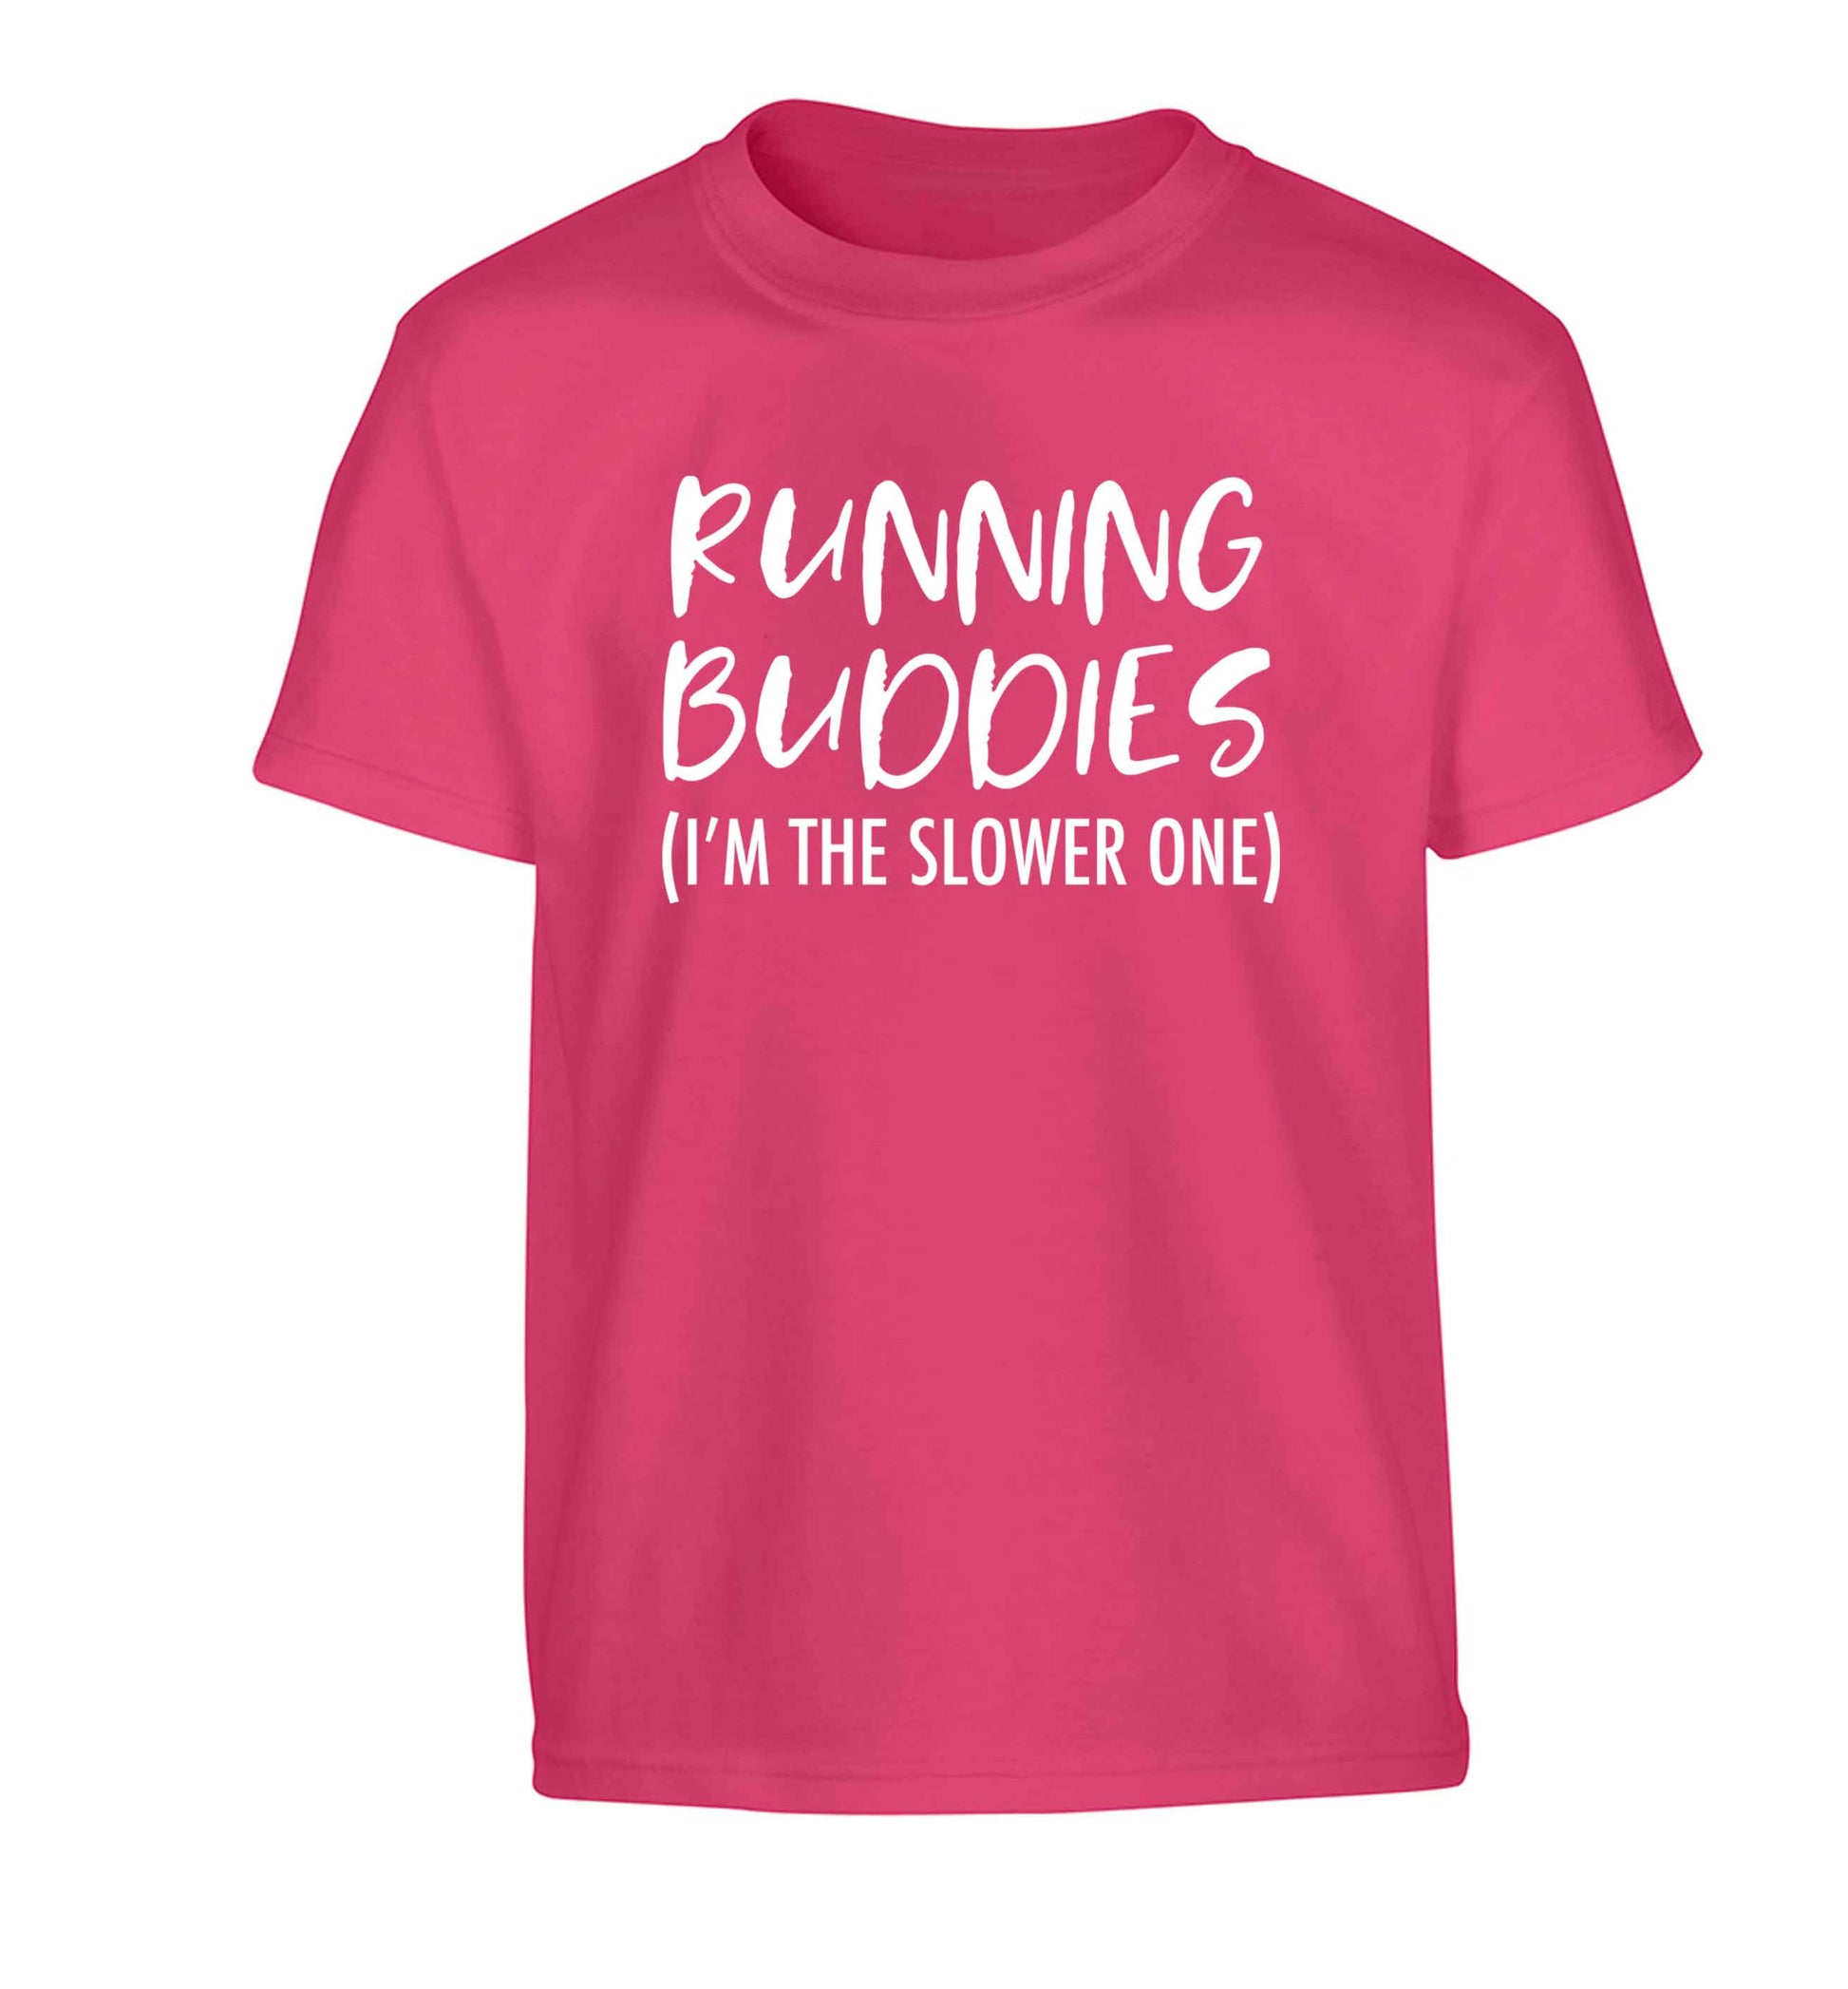 Running buddies (I'm the slower one) Children's pink Tshirt 12-13 Years